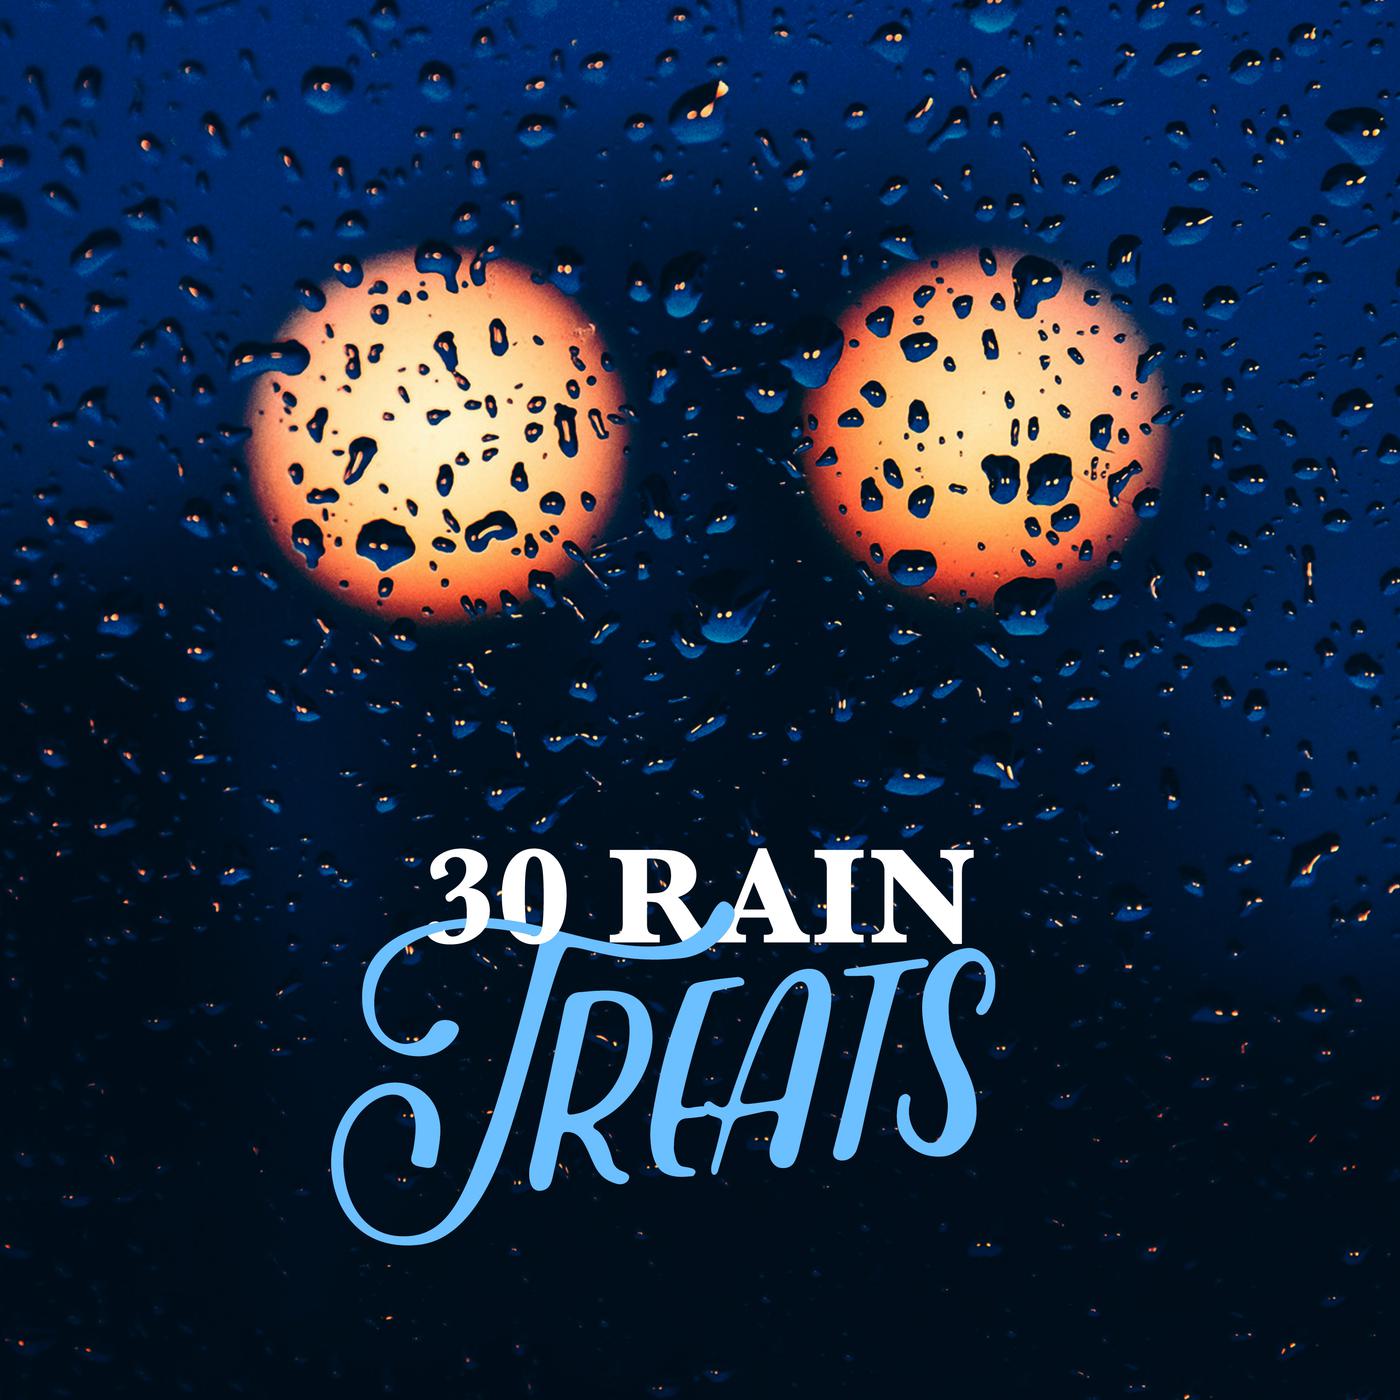 30 Rain Treats